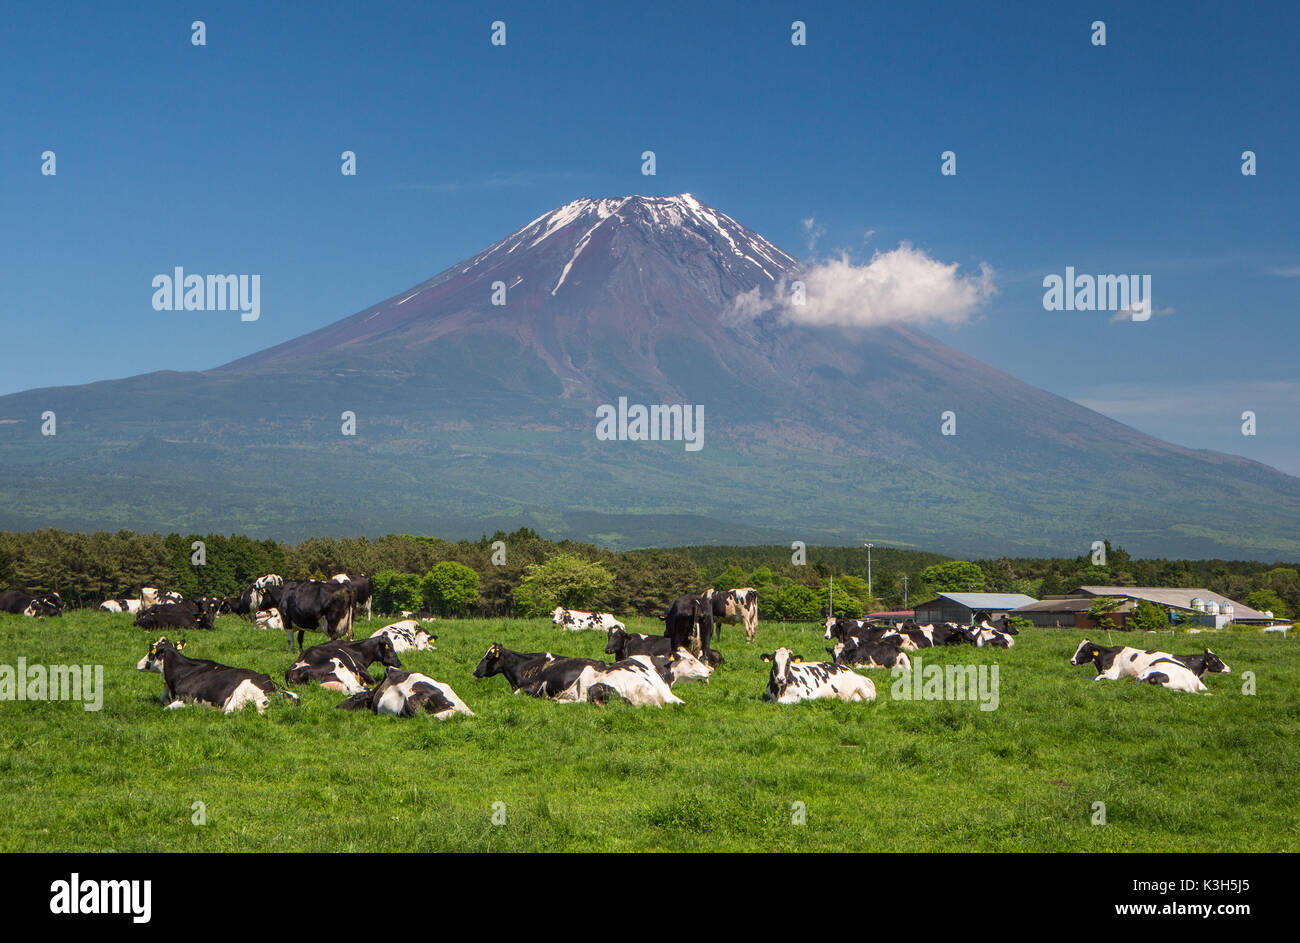 Le Japon, Province de Shizuoka, vaches au côté ouest du Mont Fuji Banque D'Images